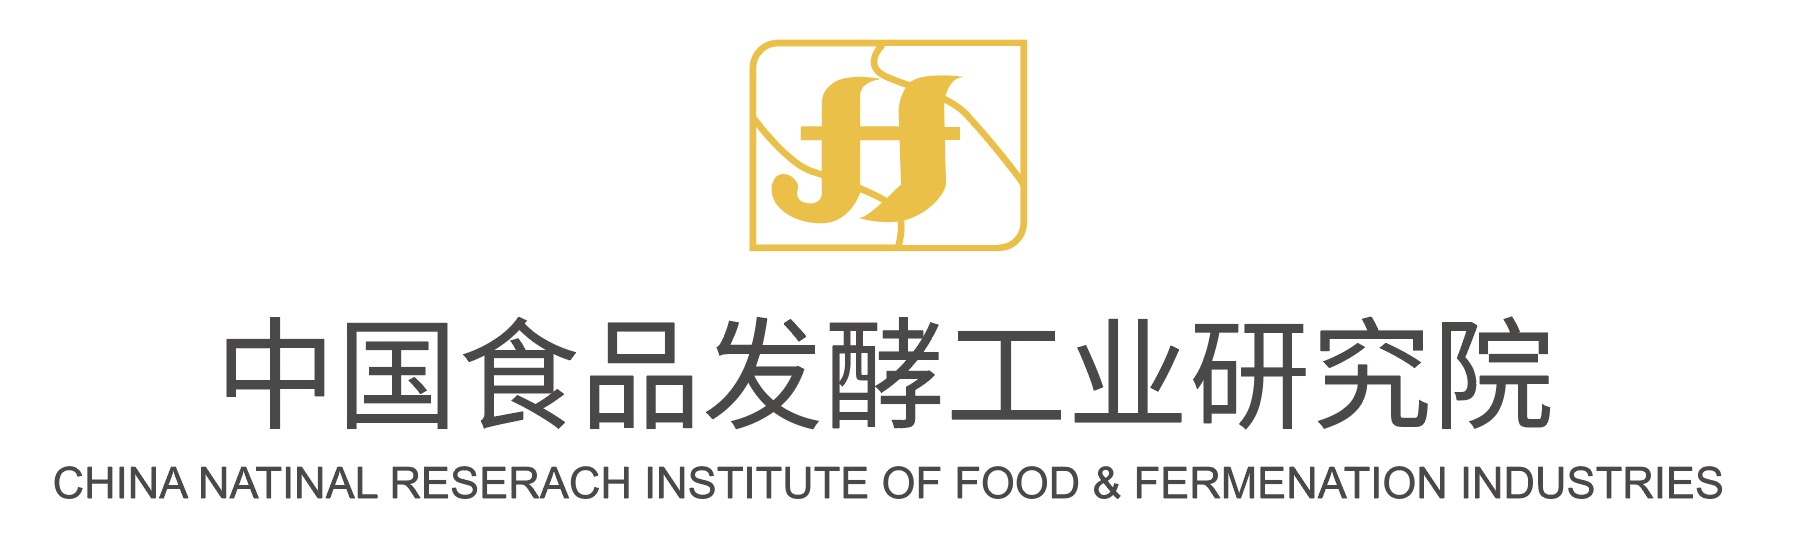 中国食品发酵工业研究院vertical.jpg